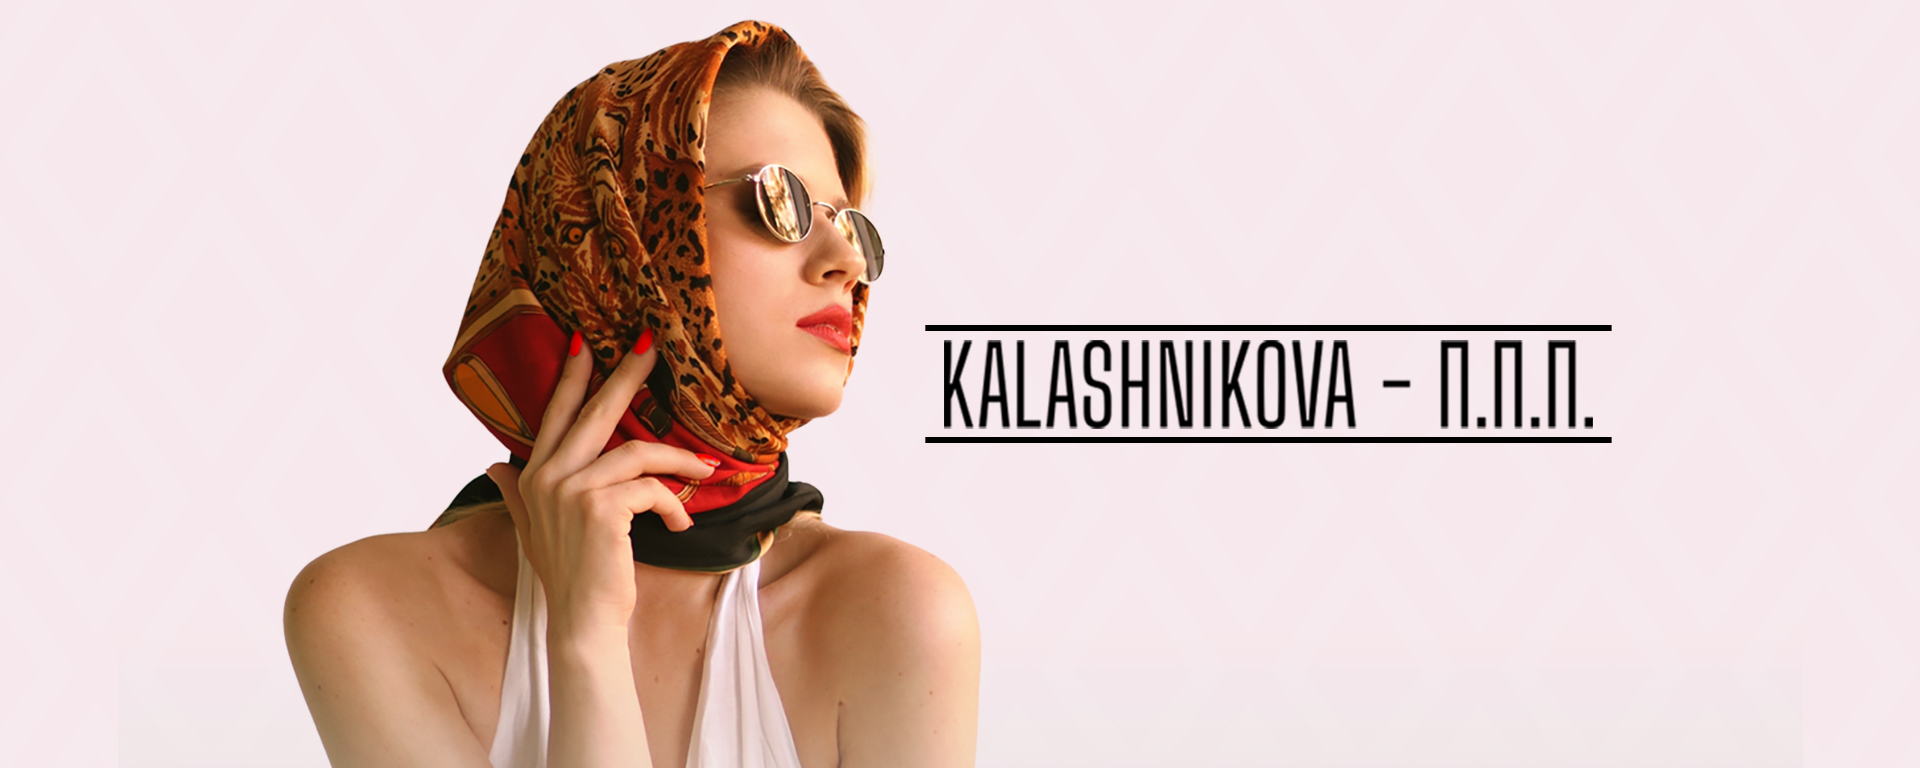 KALASHNIKOVA - П.П.П. #Shorts